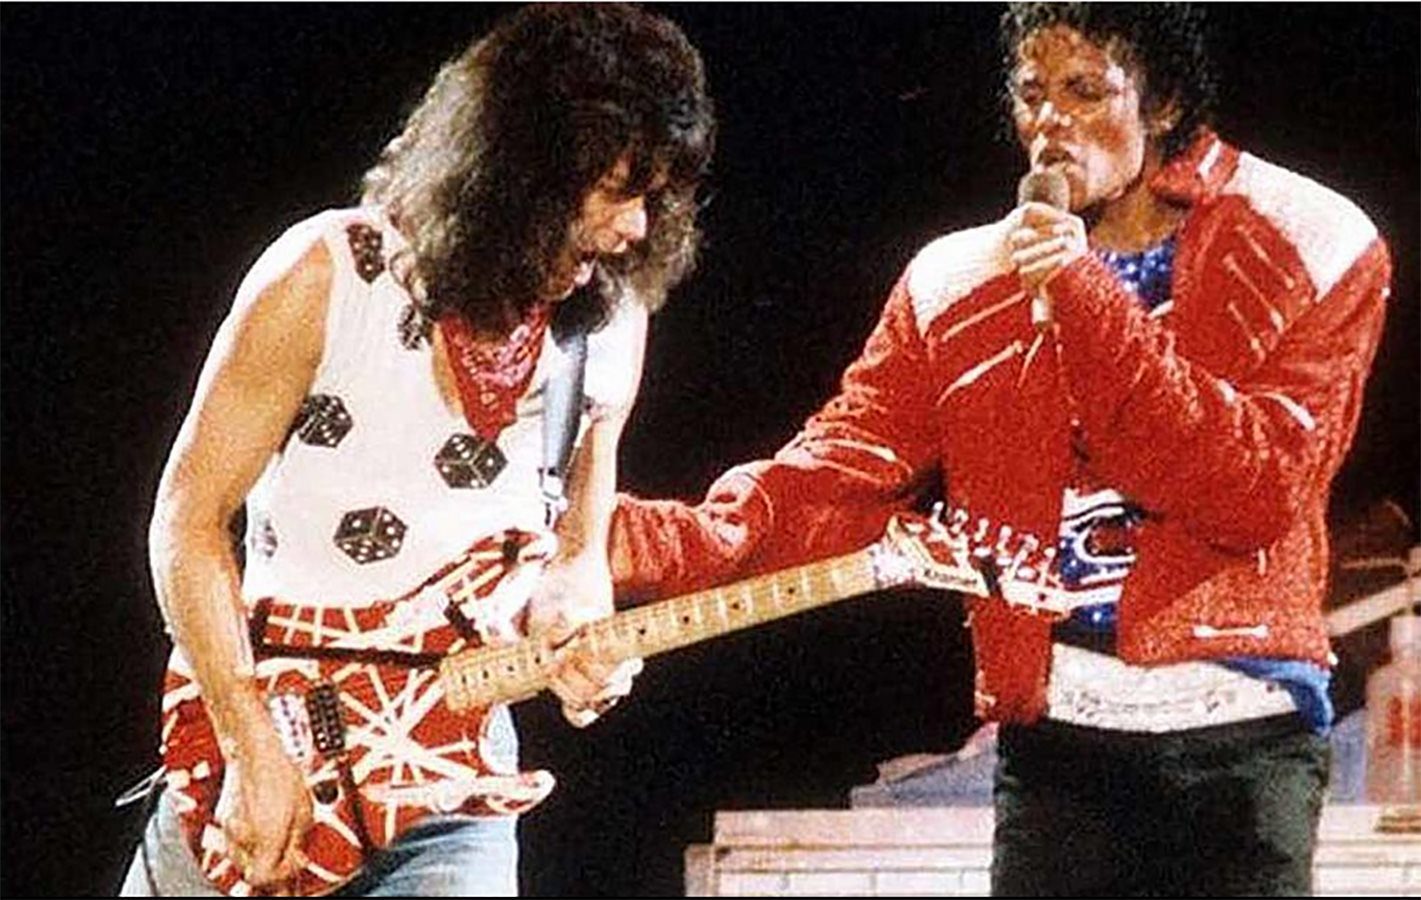 Eddie Van Halen e Michael Jackson